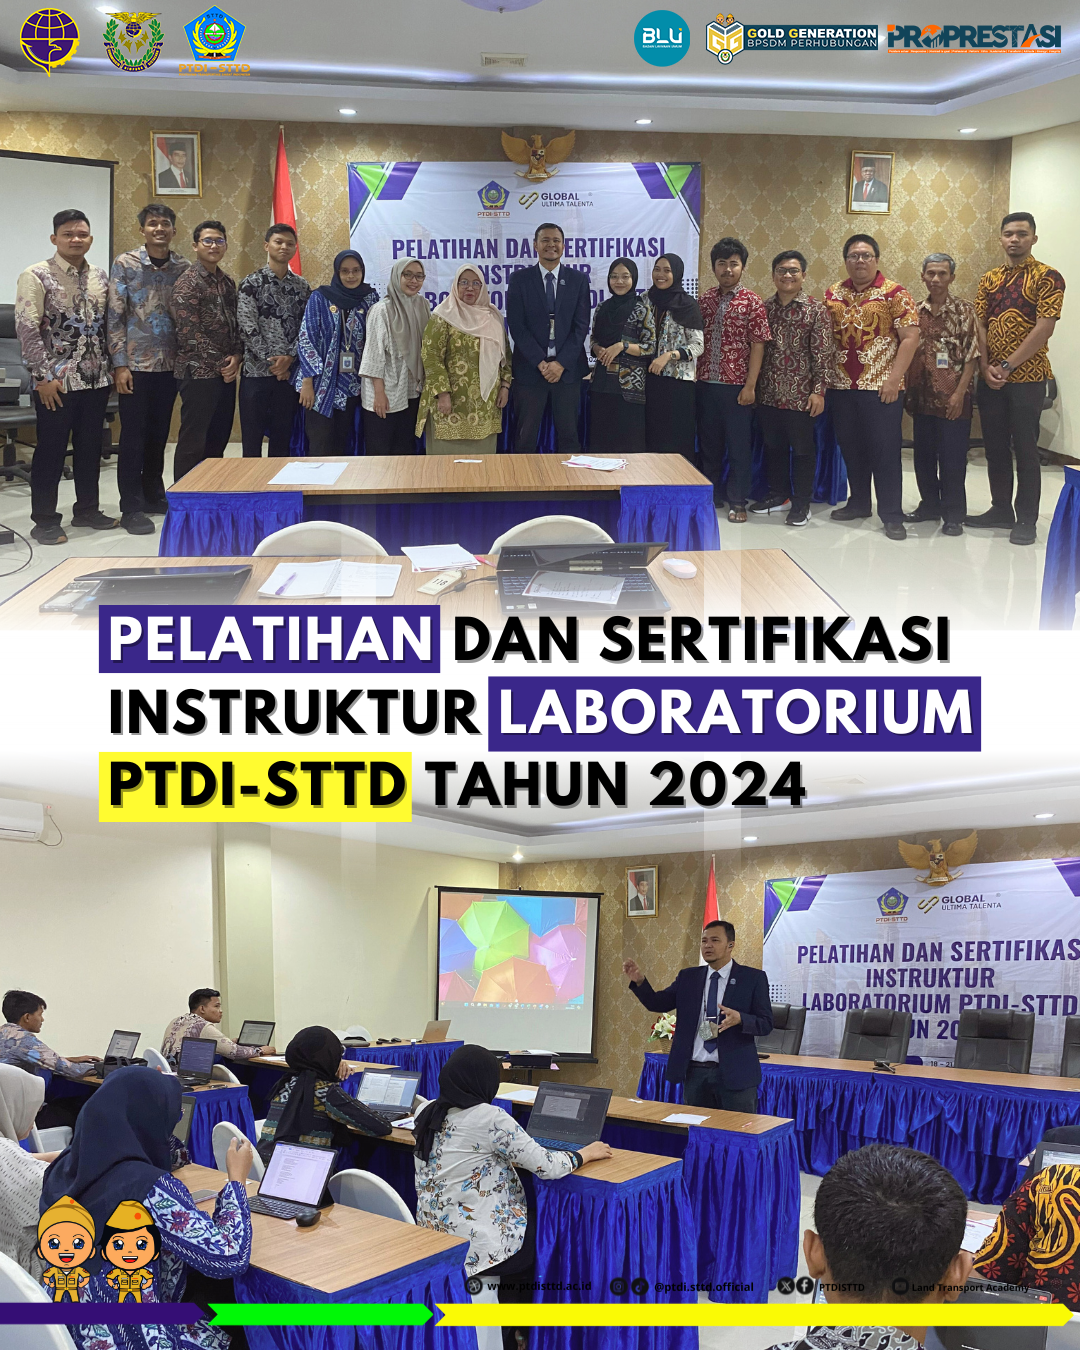 Pelatihan dan Sertifikasi Instruktur Laboratorium PTDI-STTD